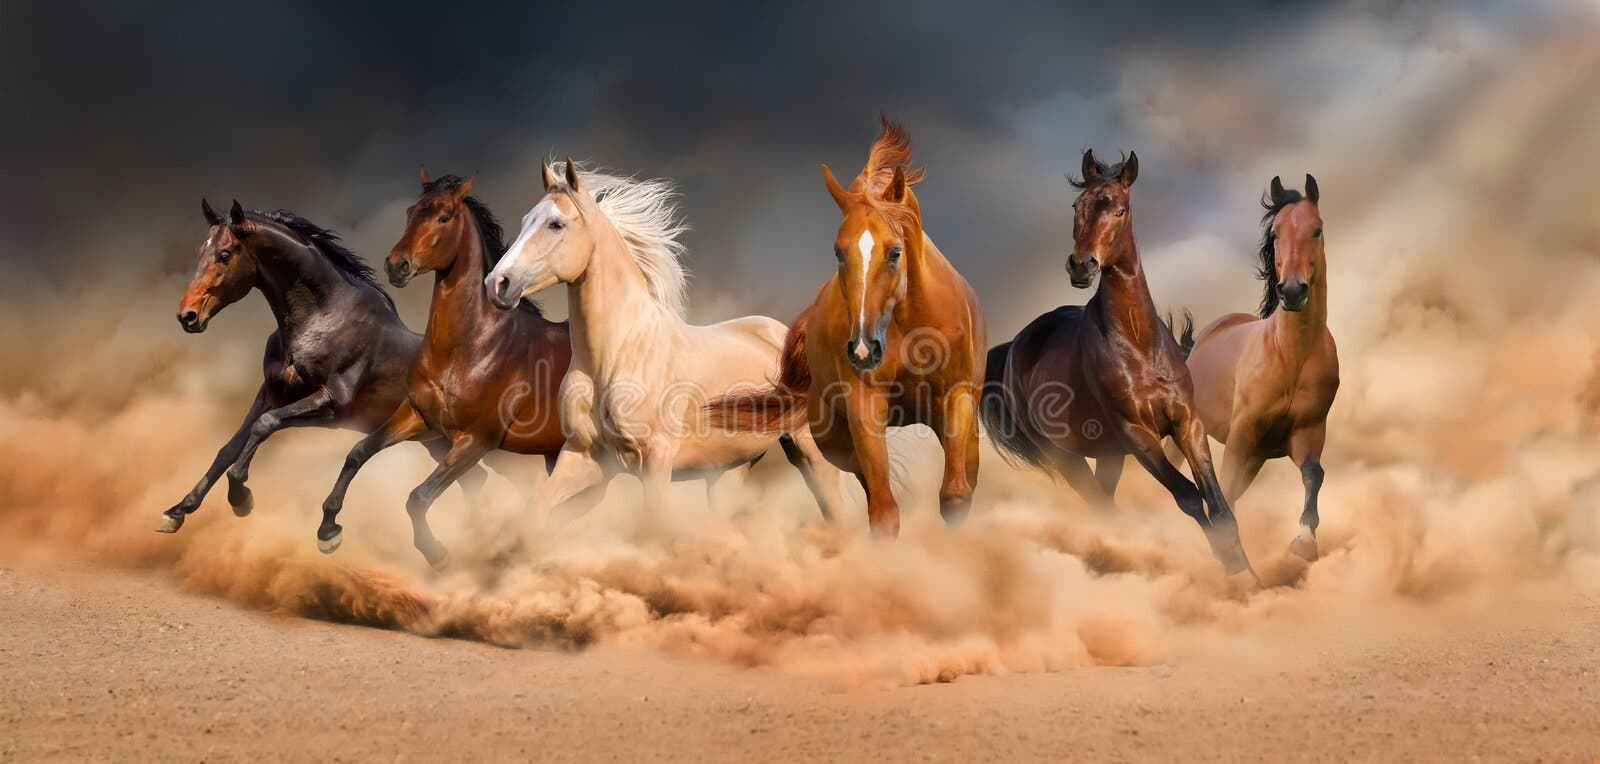 Fotos Cavalo Frente, 78.000+ fotos de arquivo grátis de alta qualidade